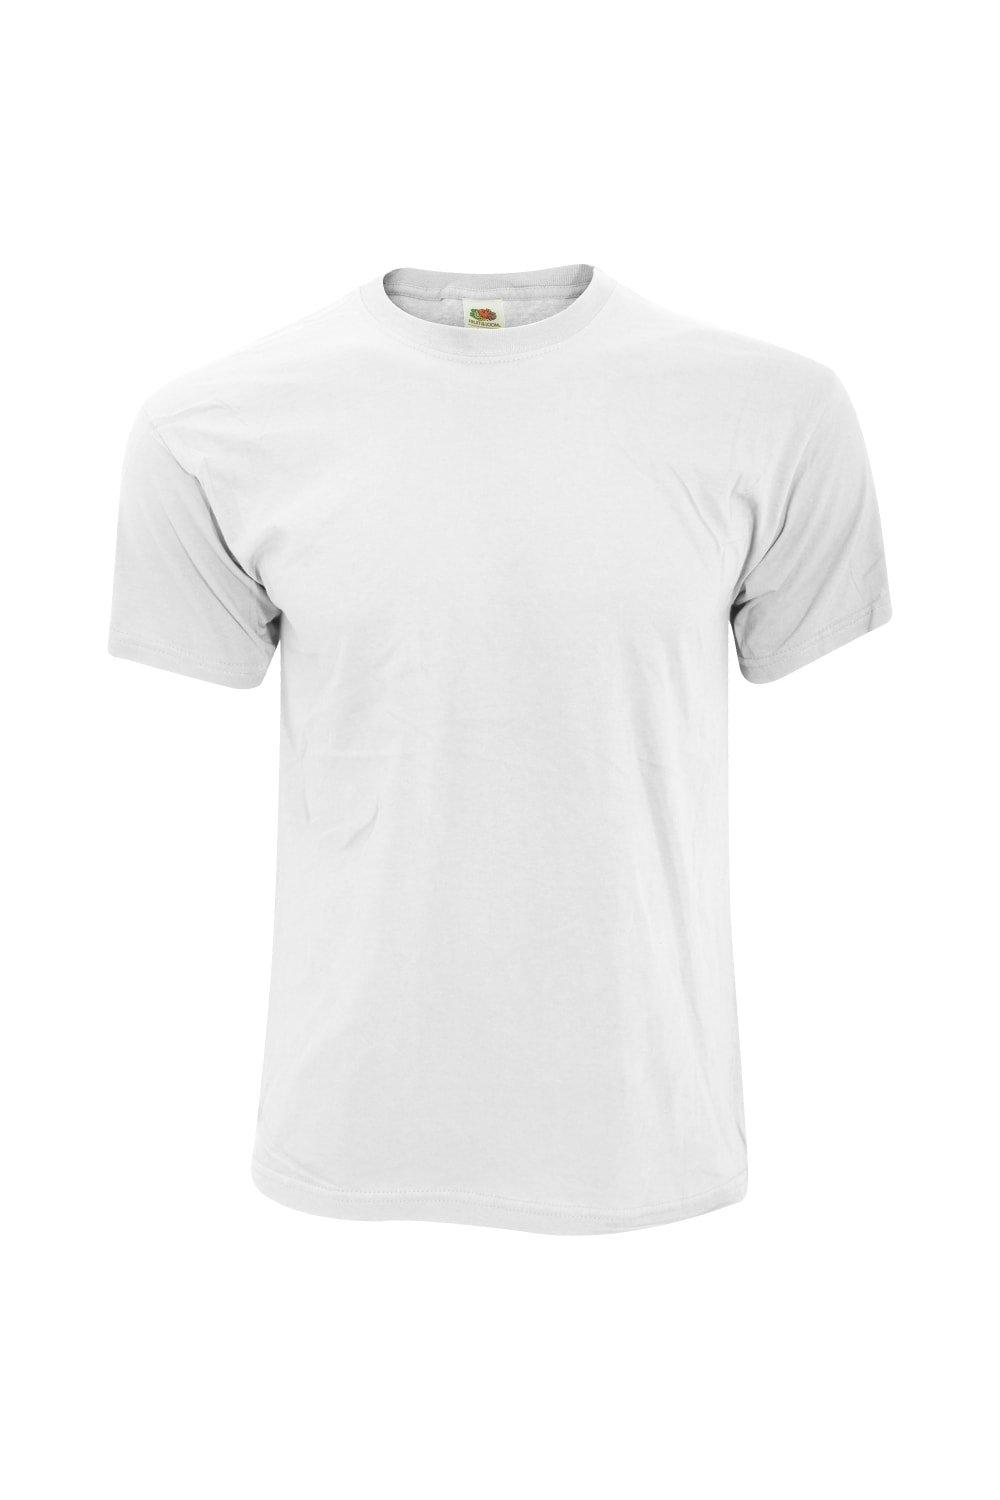 Оригинальная полноразмерная футболка Screen Stars с короткими рукавами Fruit of the Loom, белый